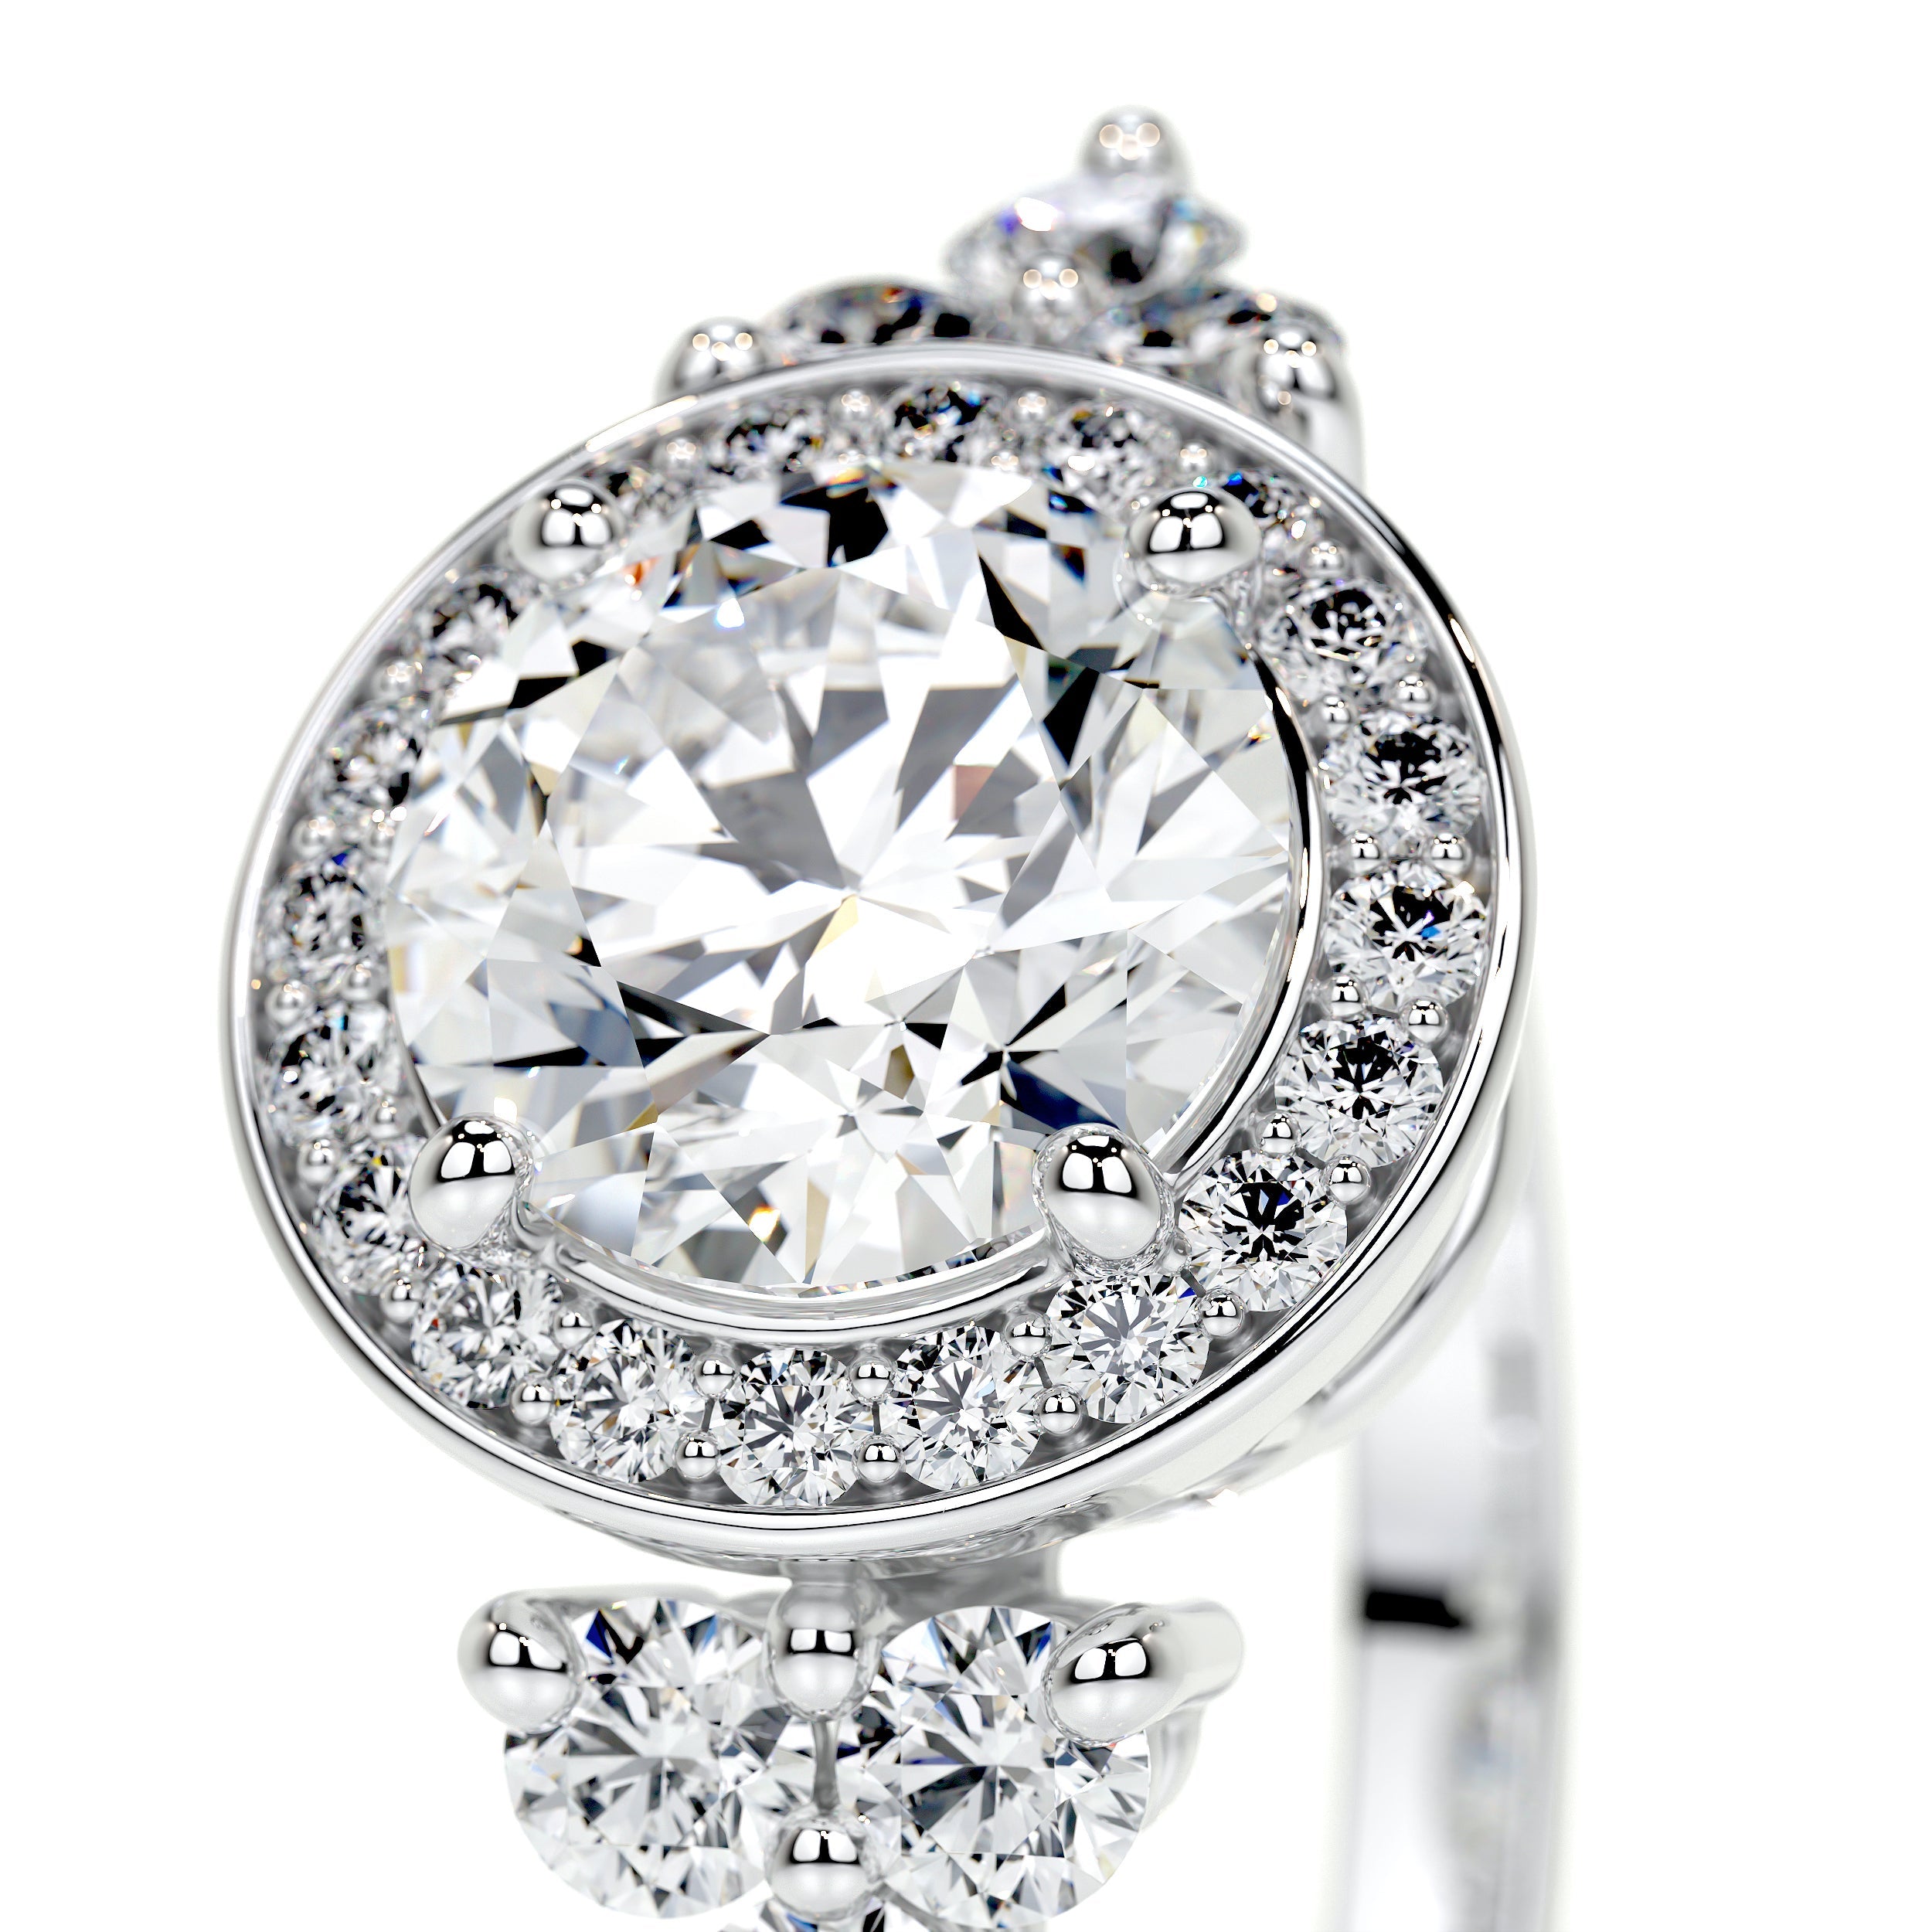 Ivy Vintage Lab Grown Diamond Ring   (2 Carat) -Platinum